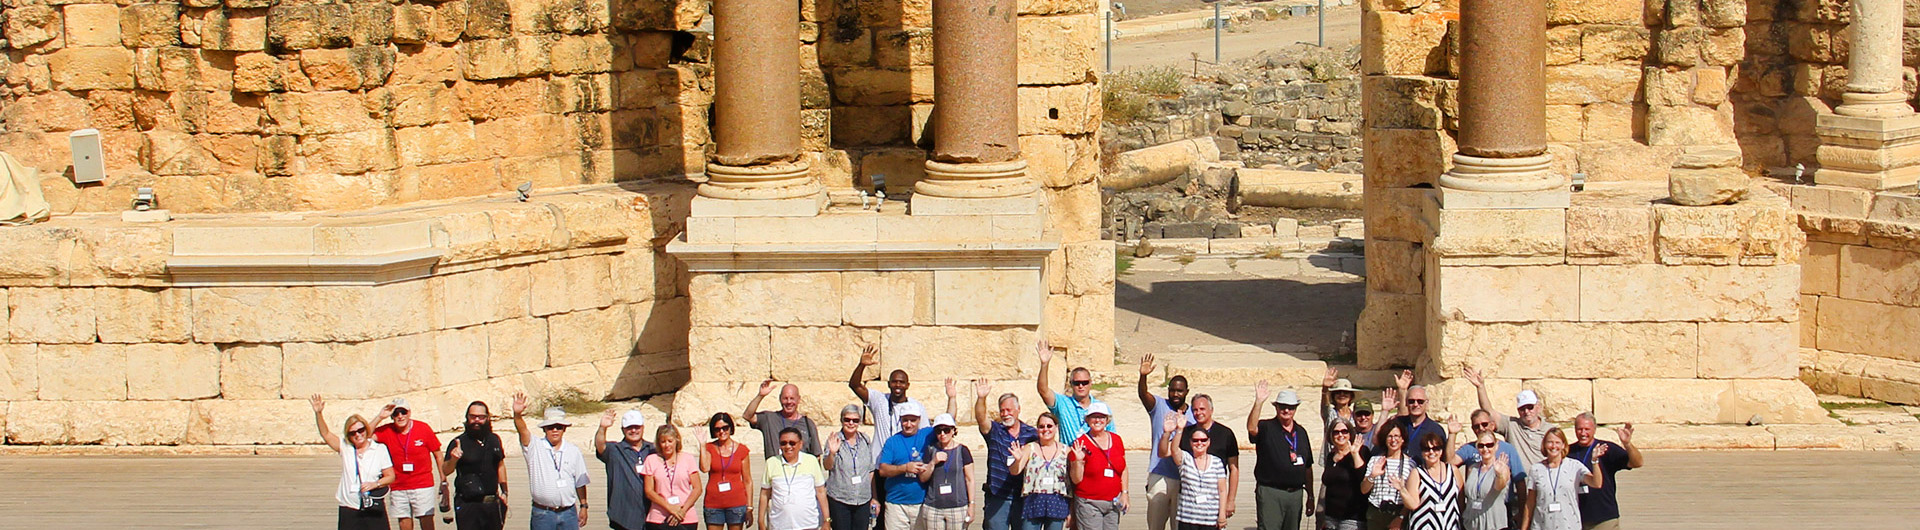 Una foto en Israel con un grupo